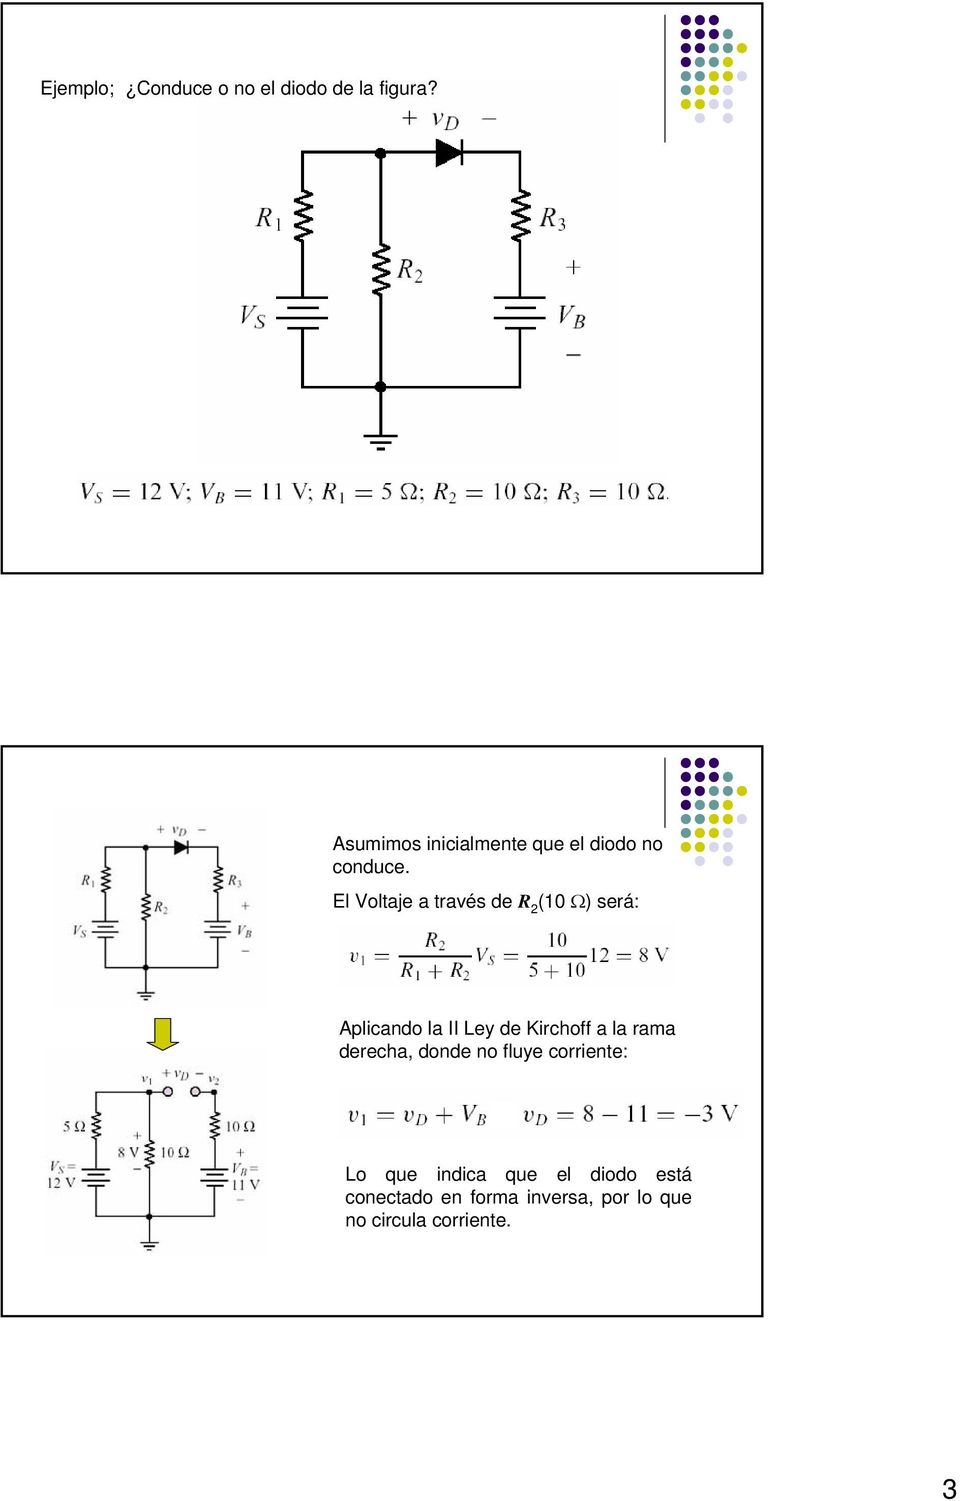 El Voltaje a través de R 2 (10 Ω) será: Aplicando la II Ley de Kirchoff a